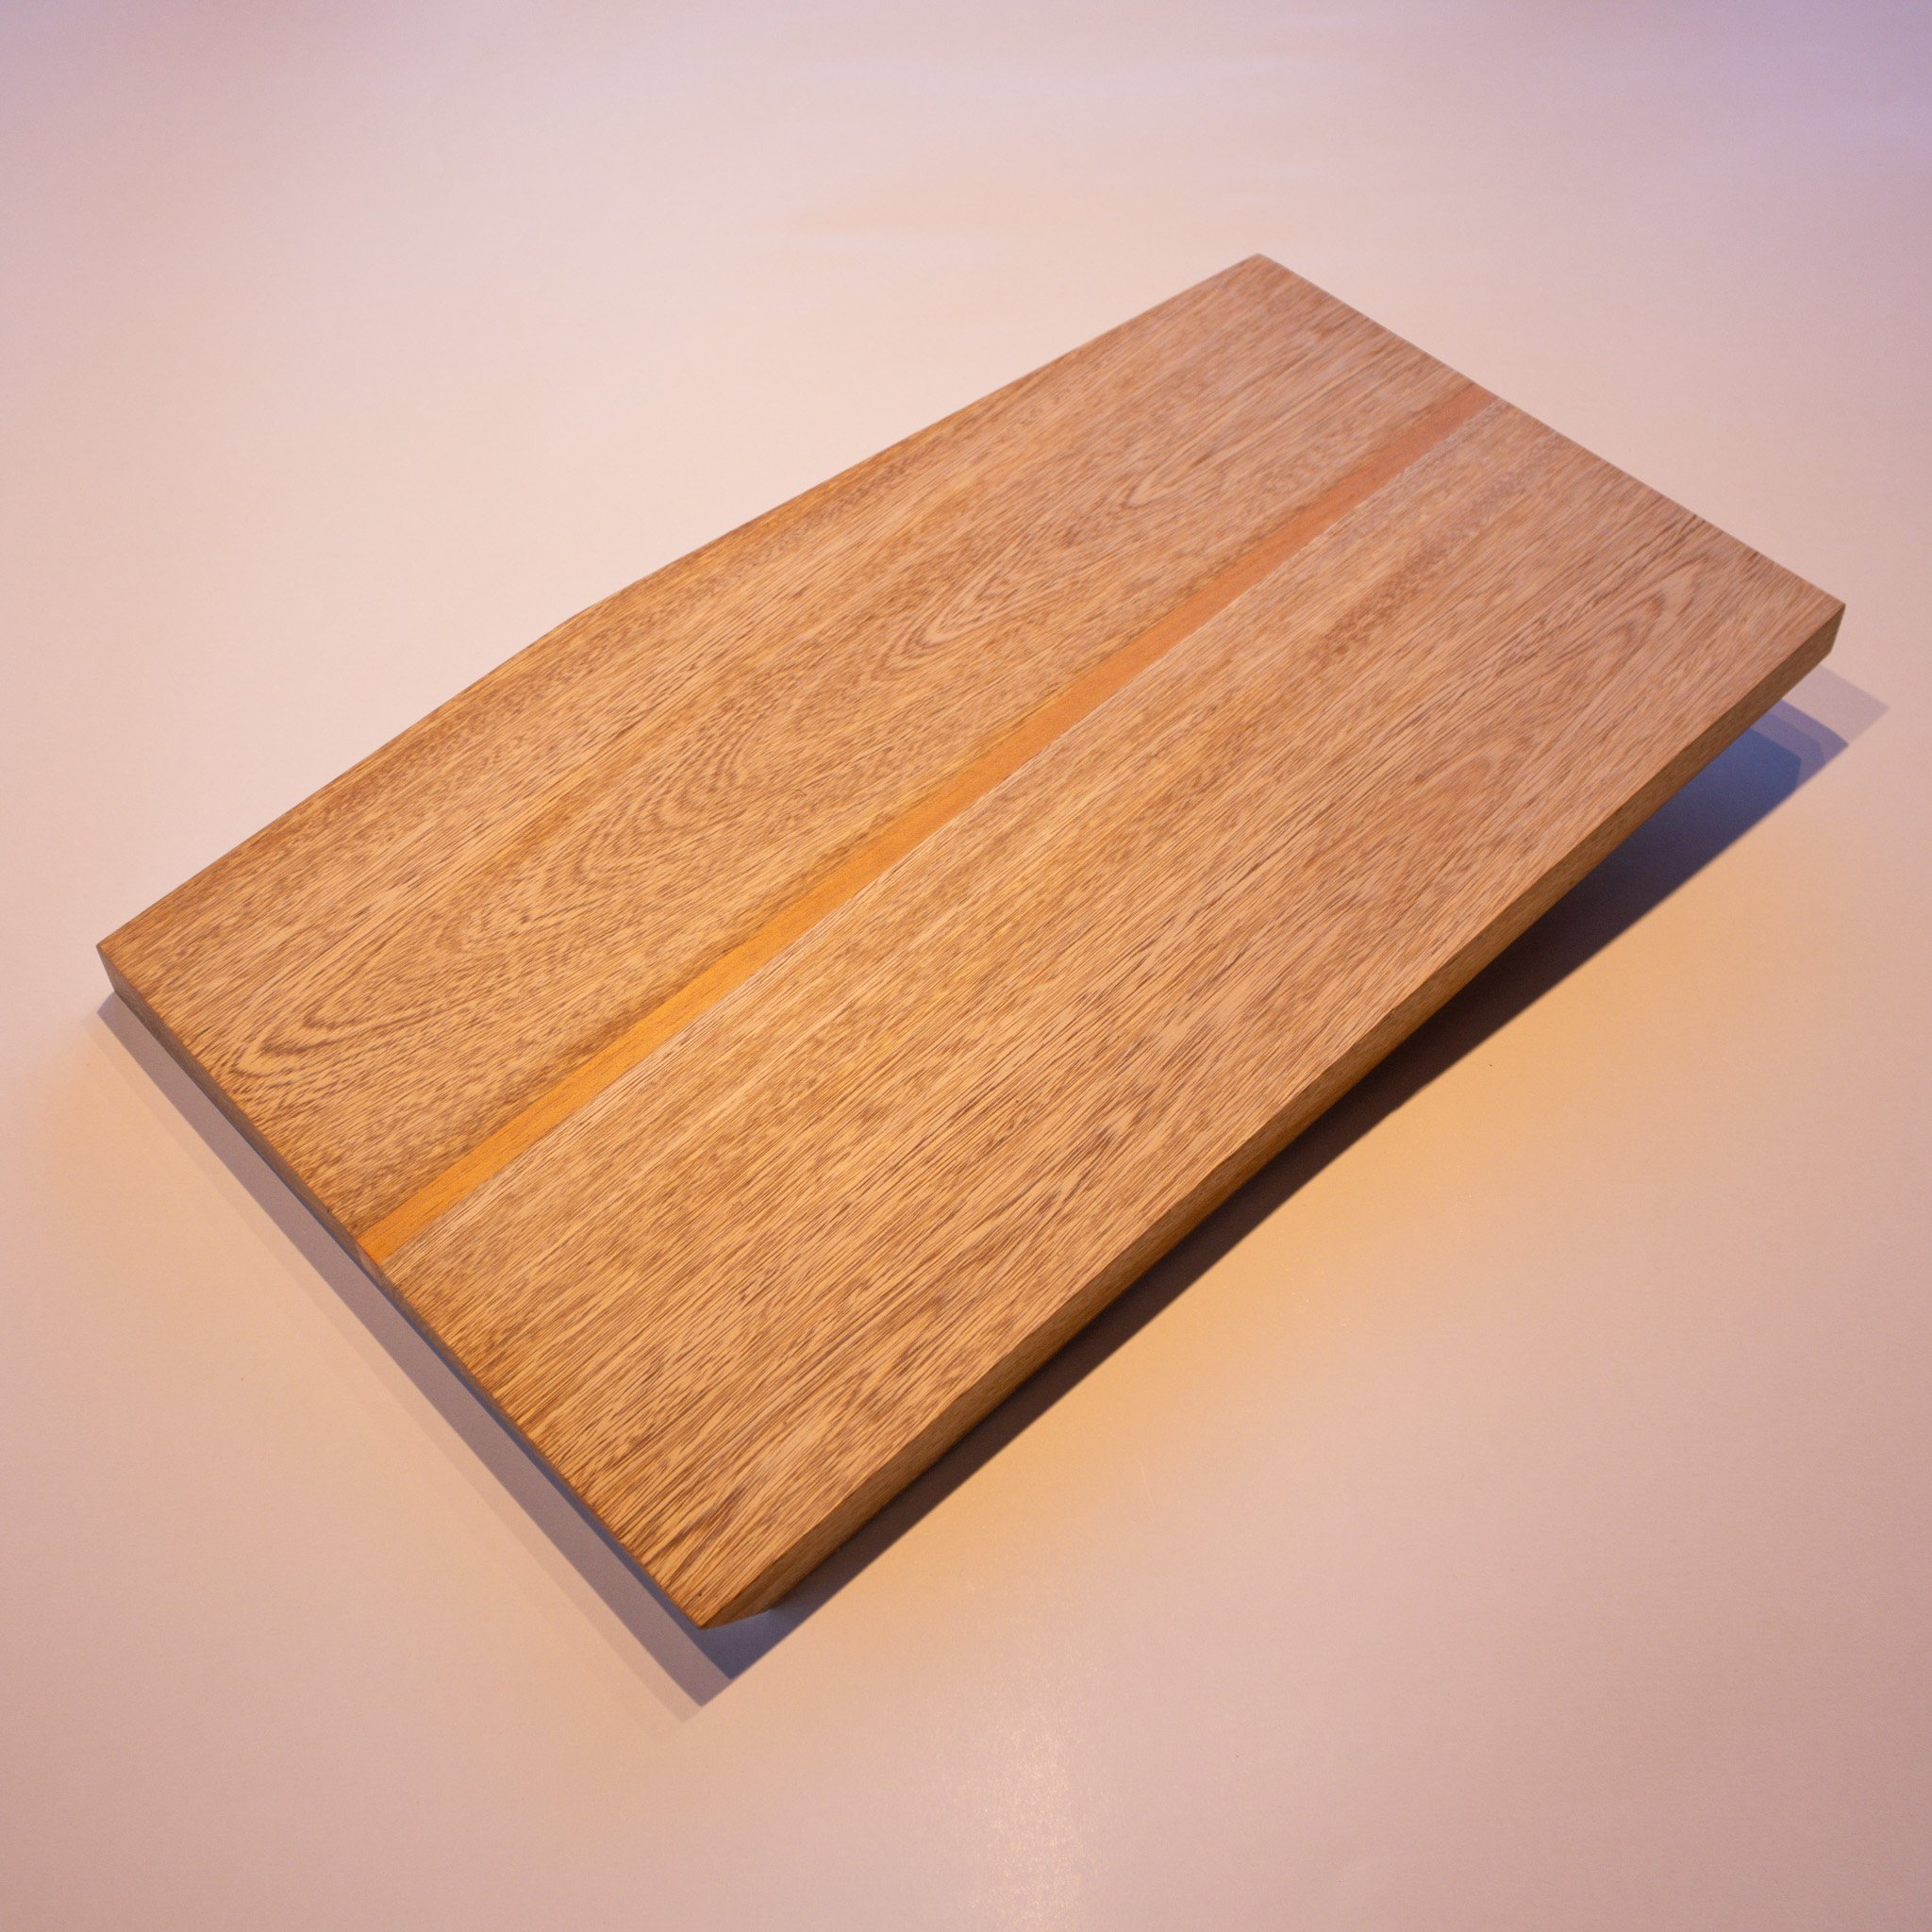 0026-cutting board.jpg